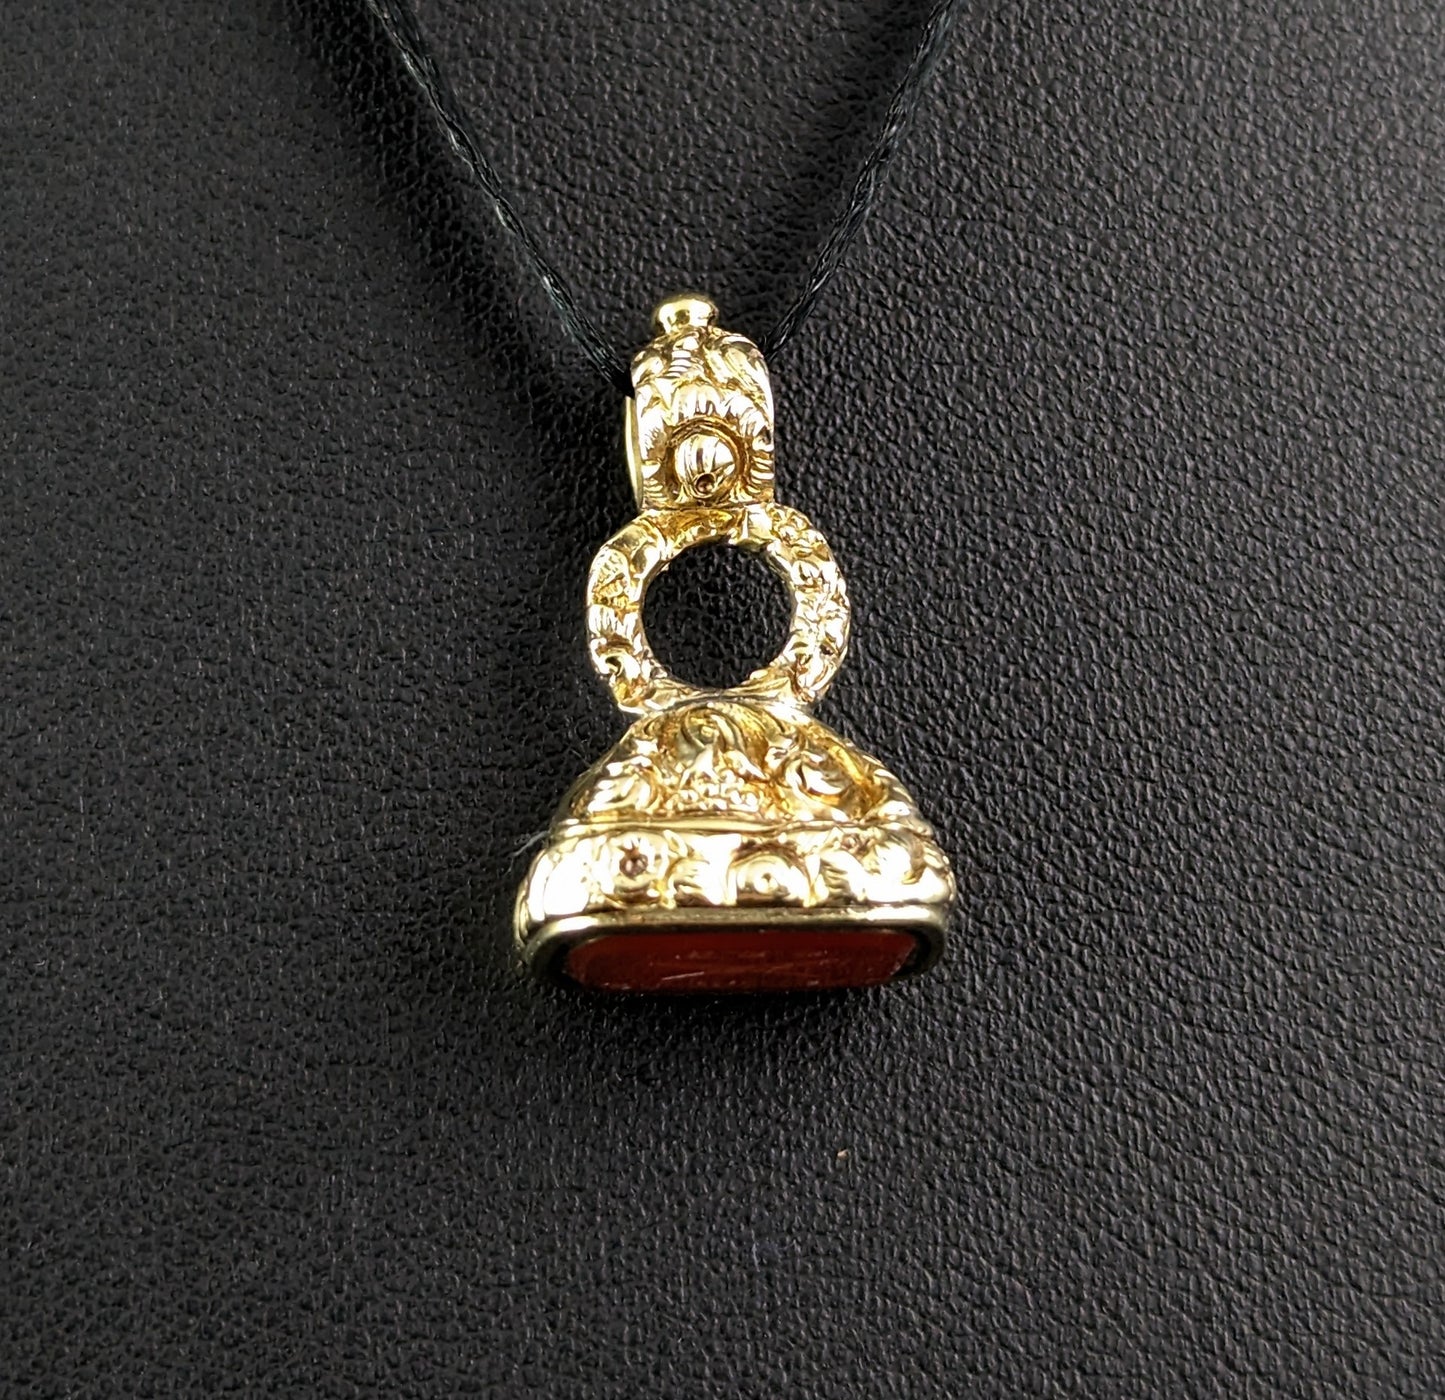 Antique Georgian seal fob pendant, Our Quills Unite Us, 9ct gold cased, Carnelian